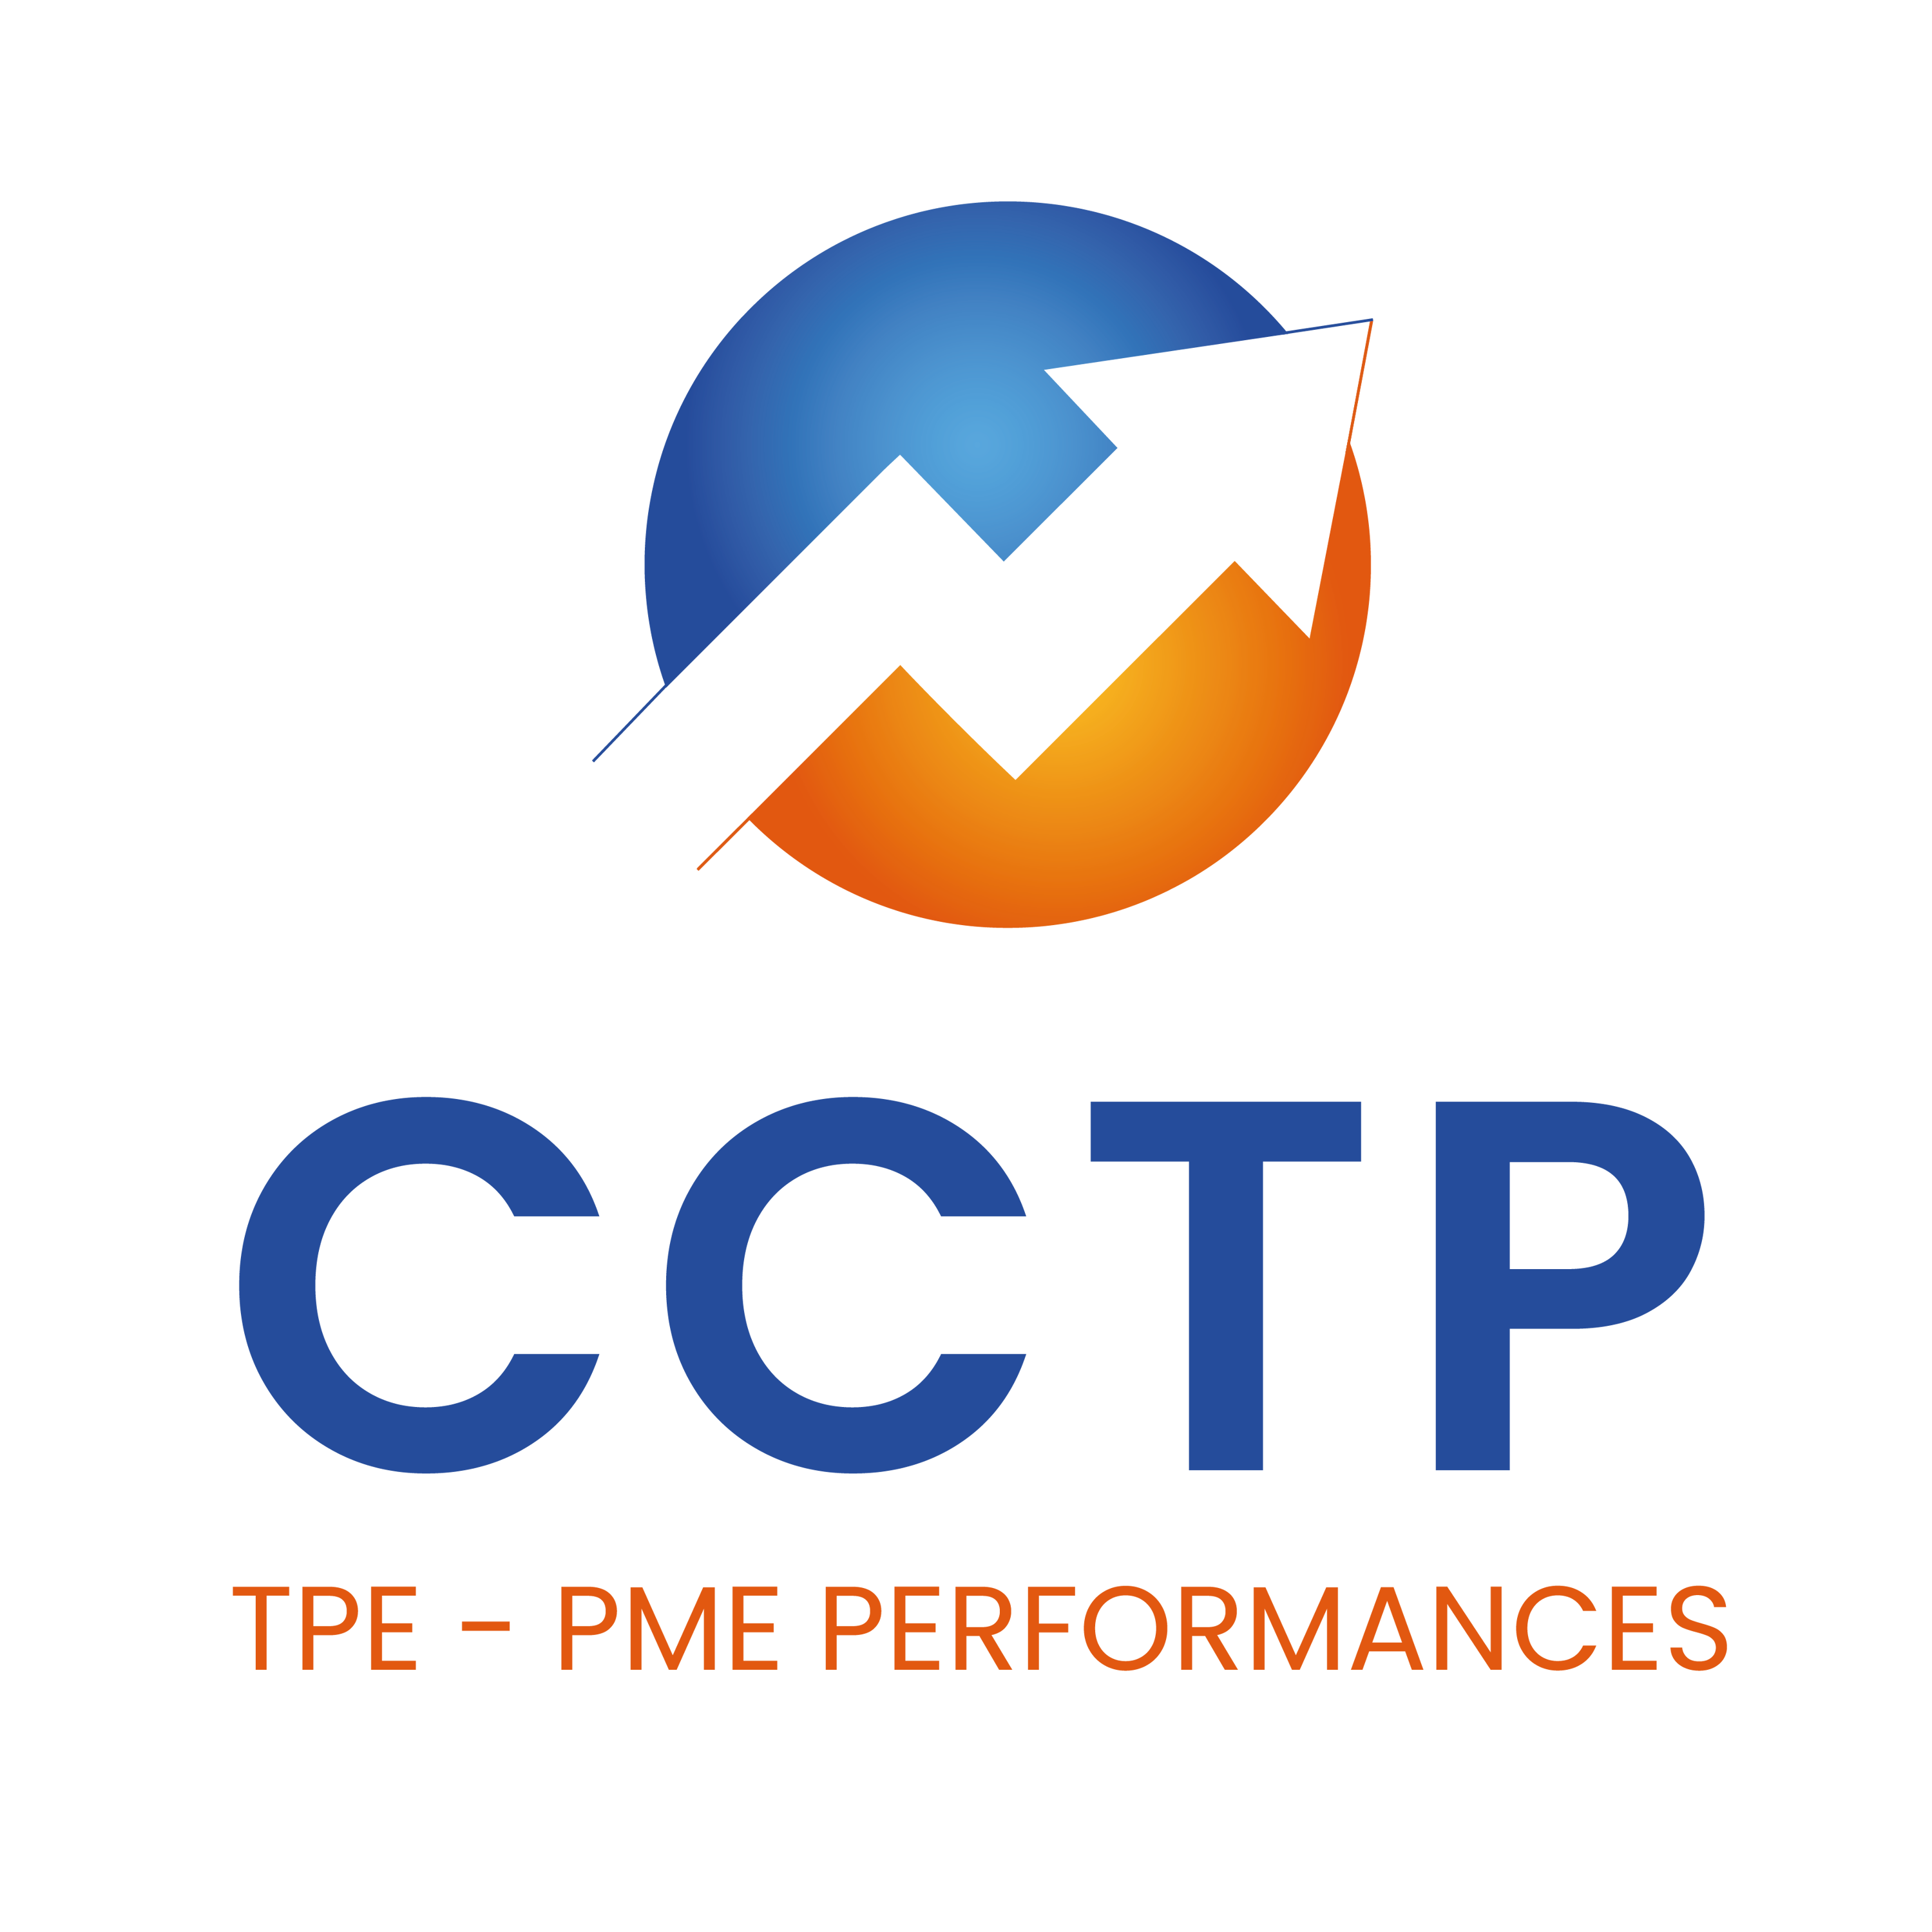 CCTP TPE-PME PERFORMANCES 